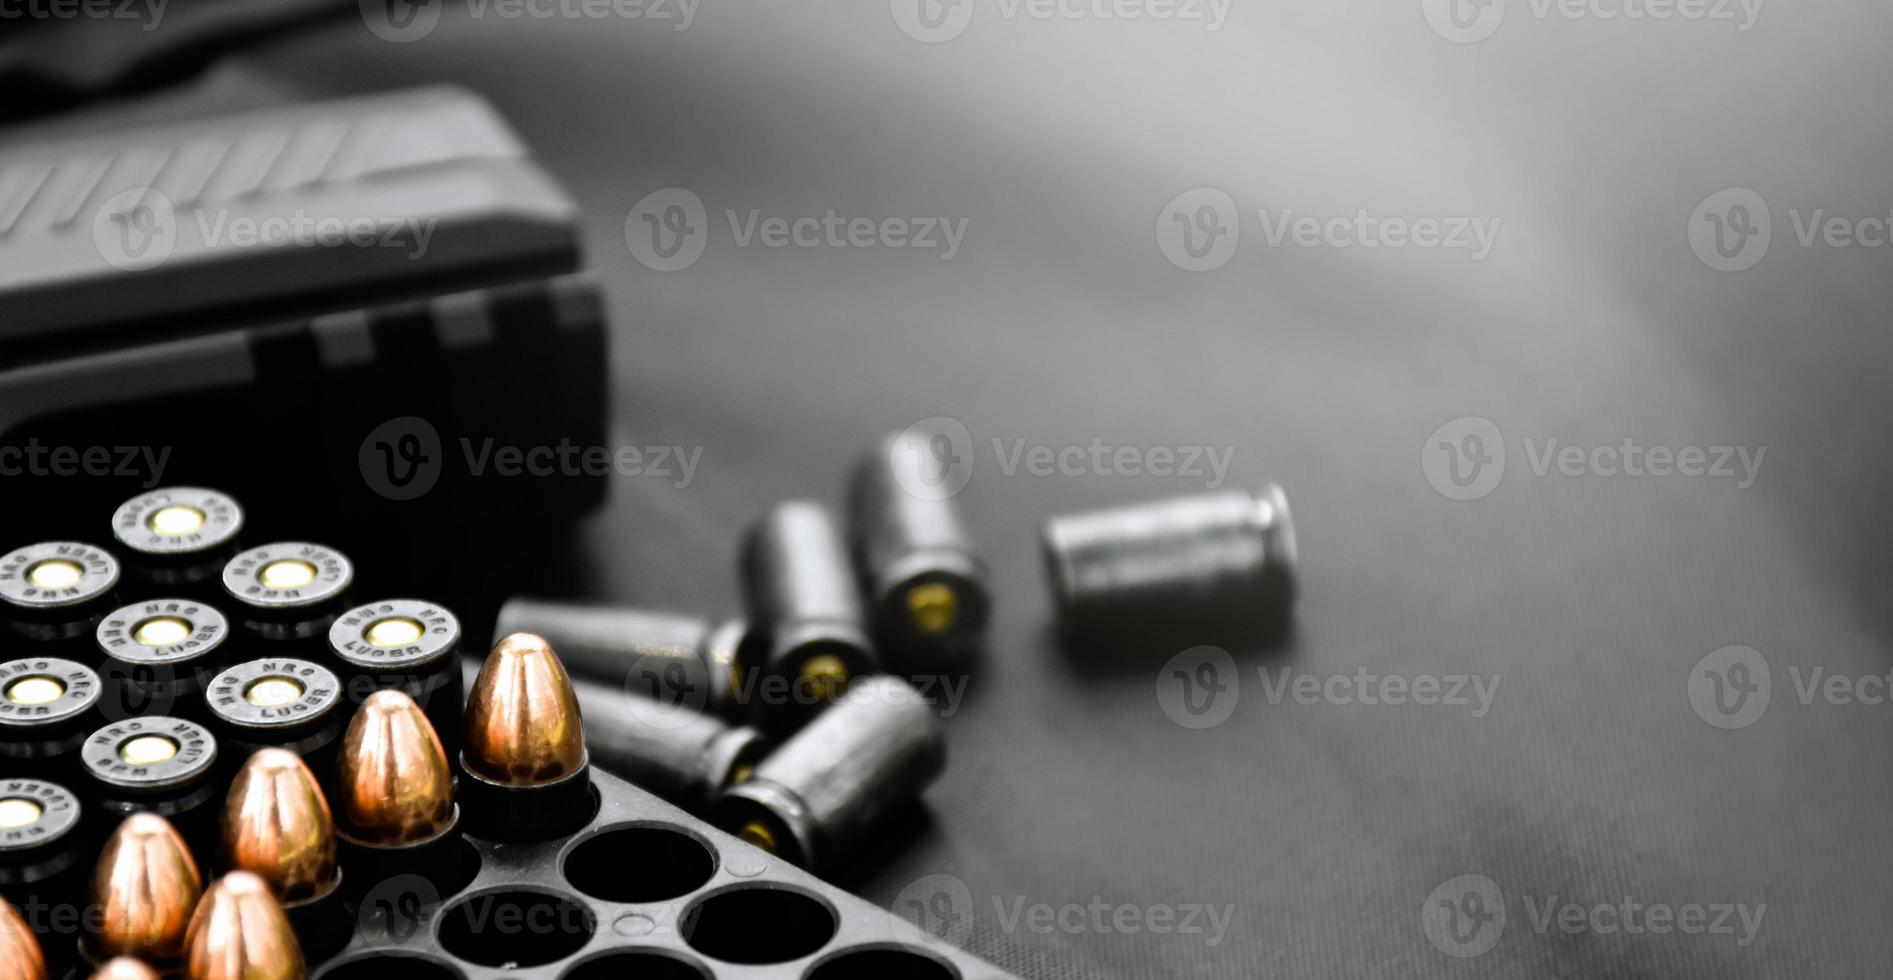 automatisk svart 9mm pistol och kulor på svart läder bakgrund, selektiv och mjuk fokus, kopia Plats. foto